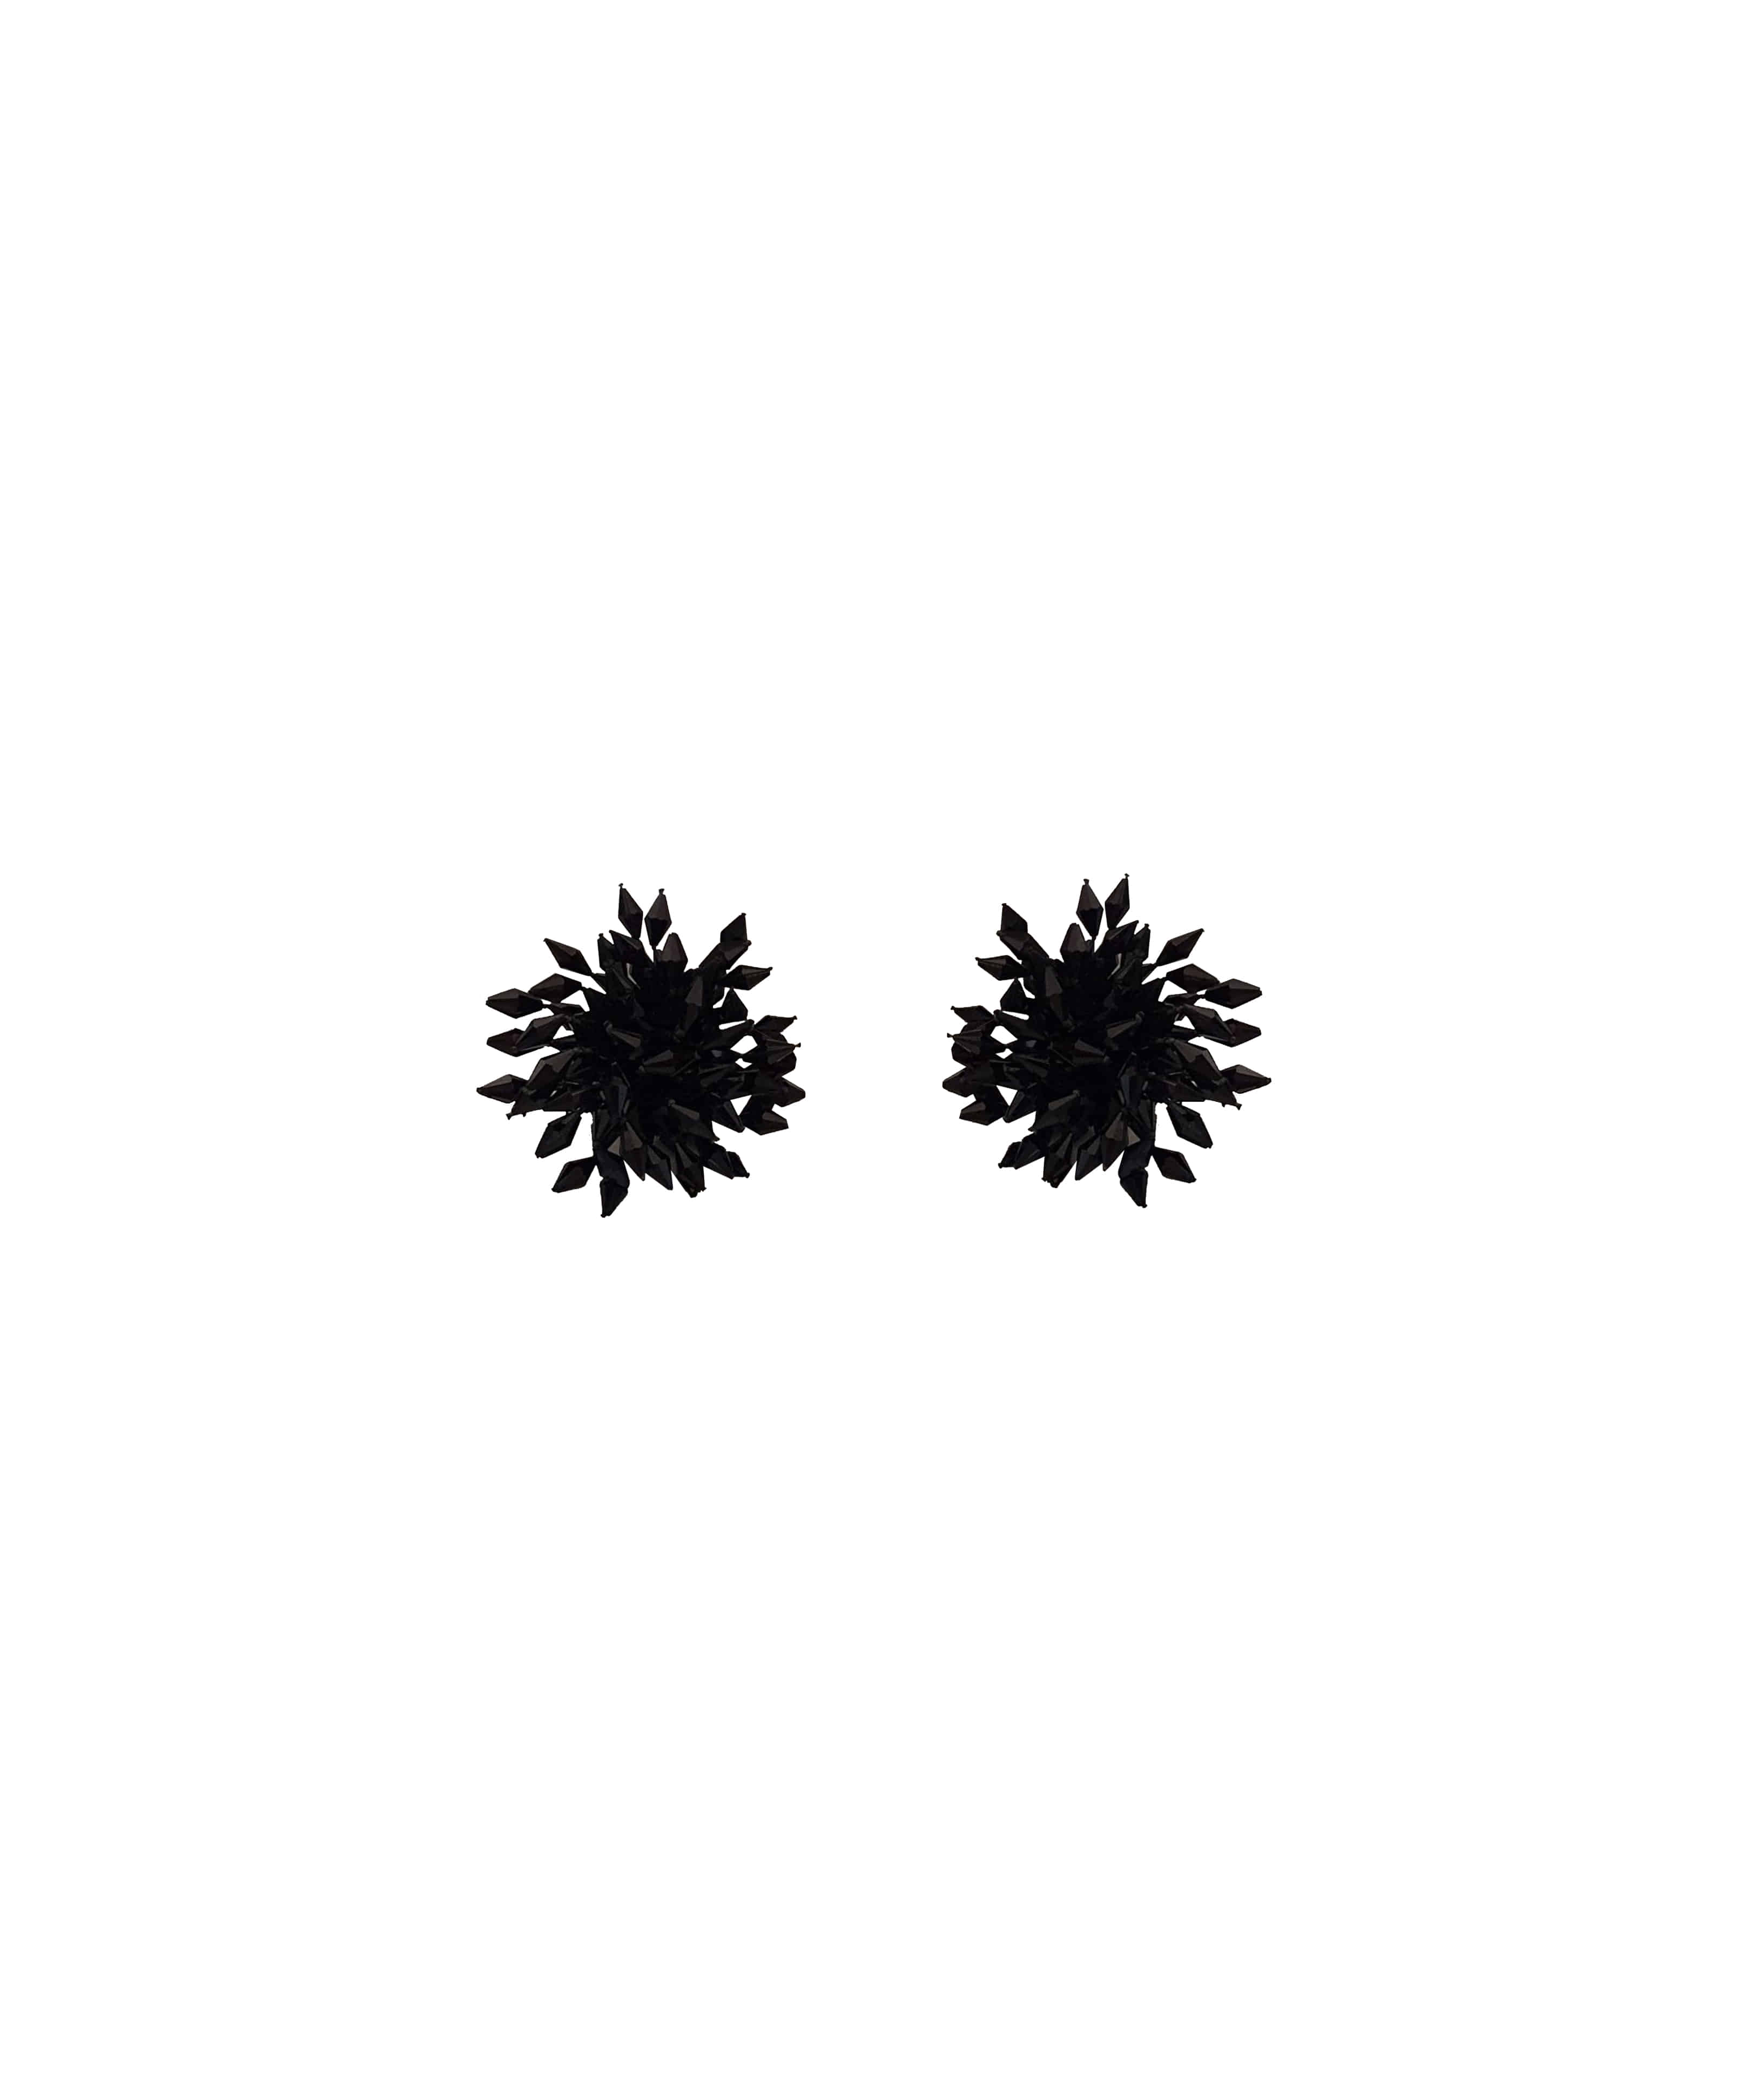 Black crystal flower earrings